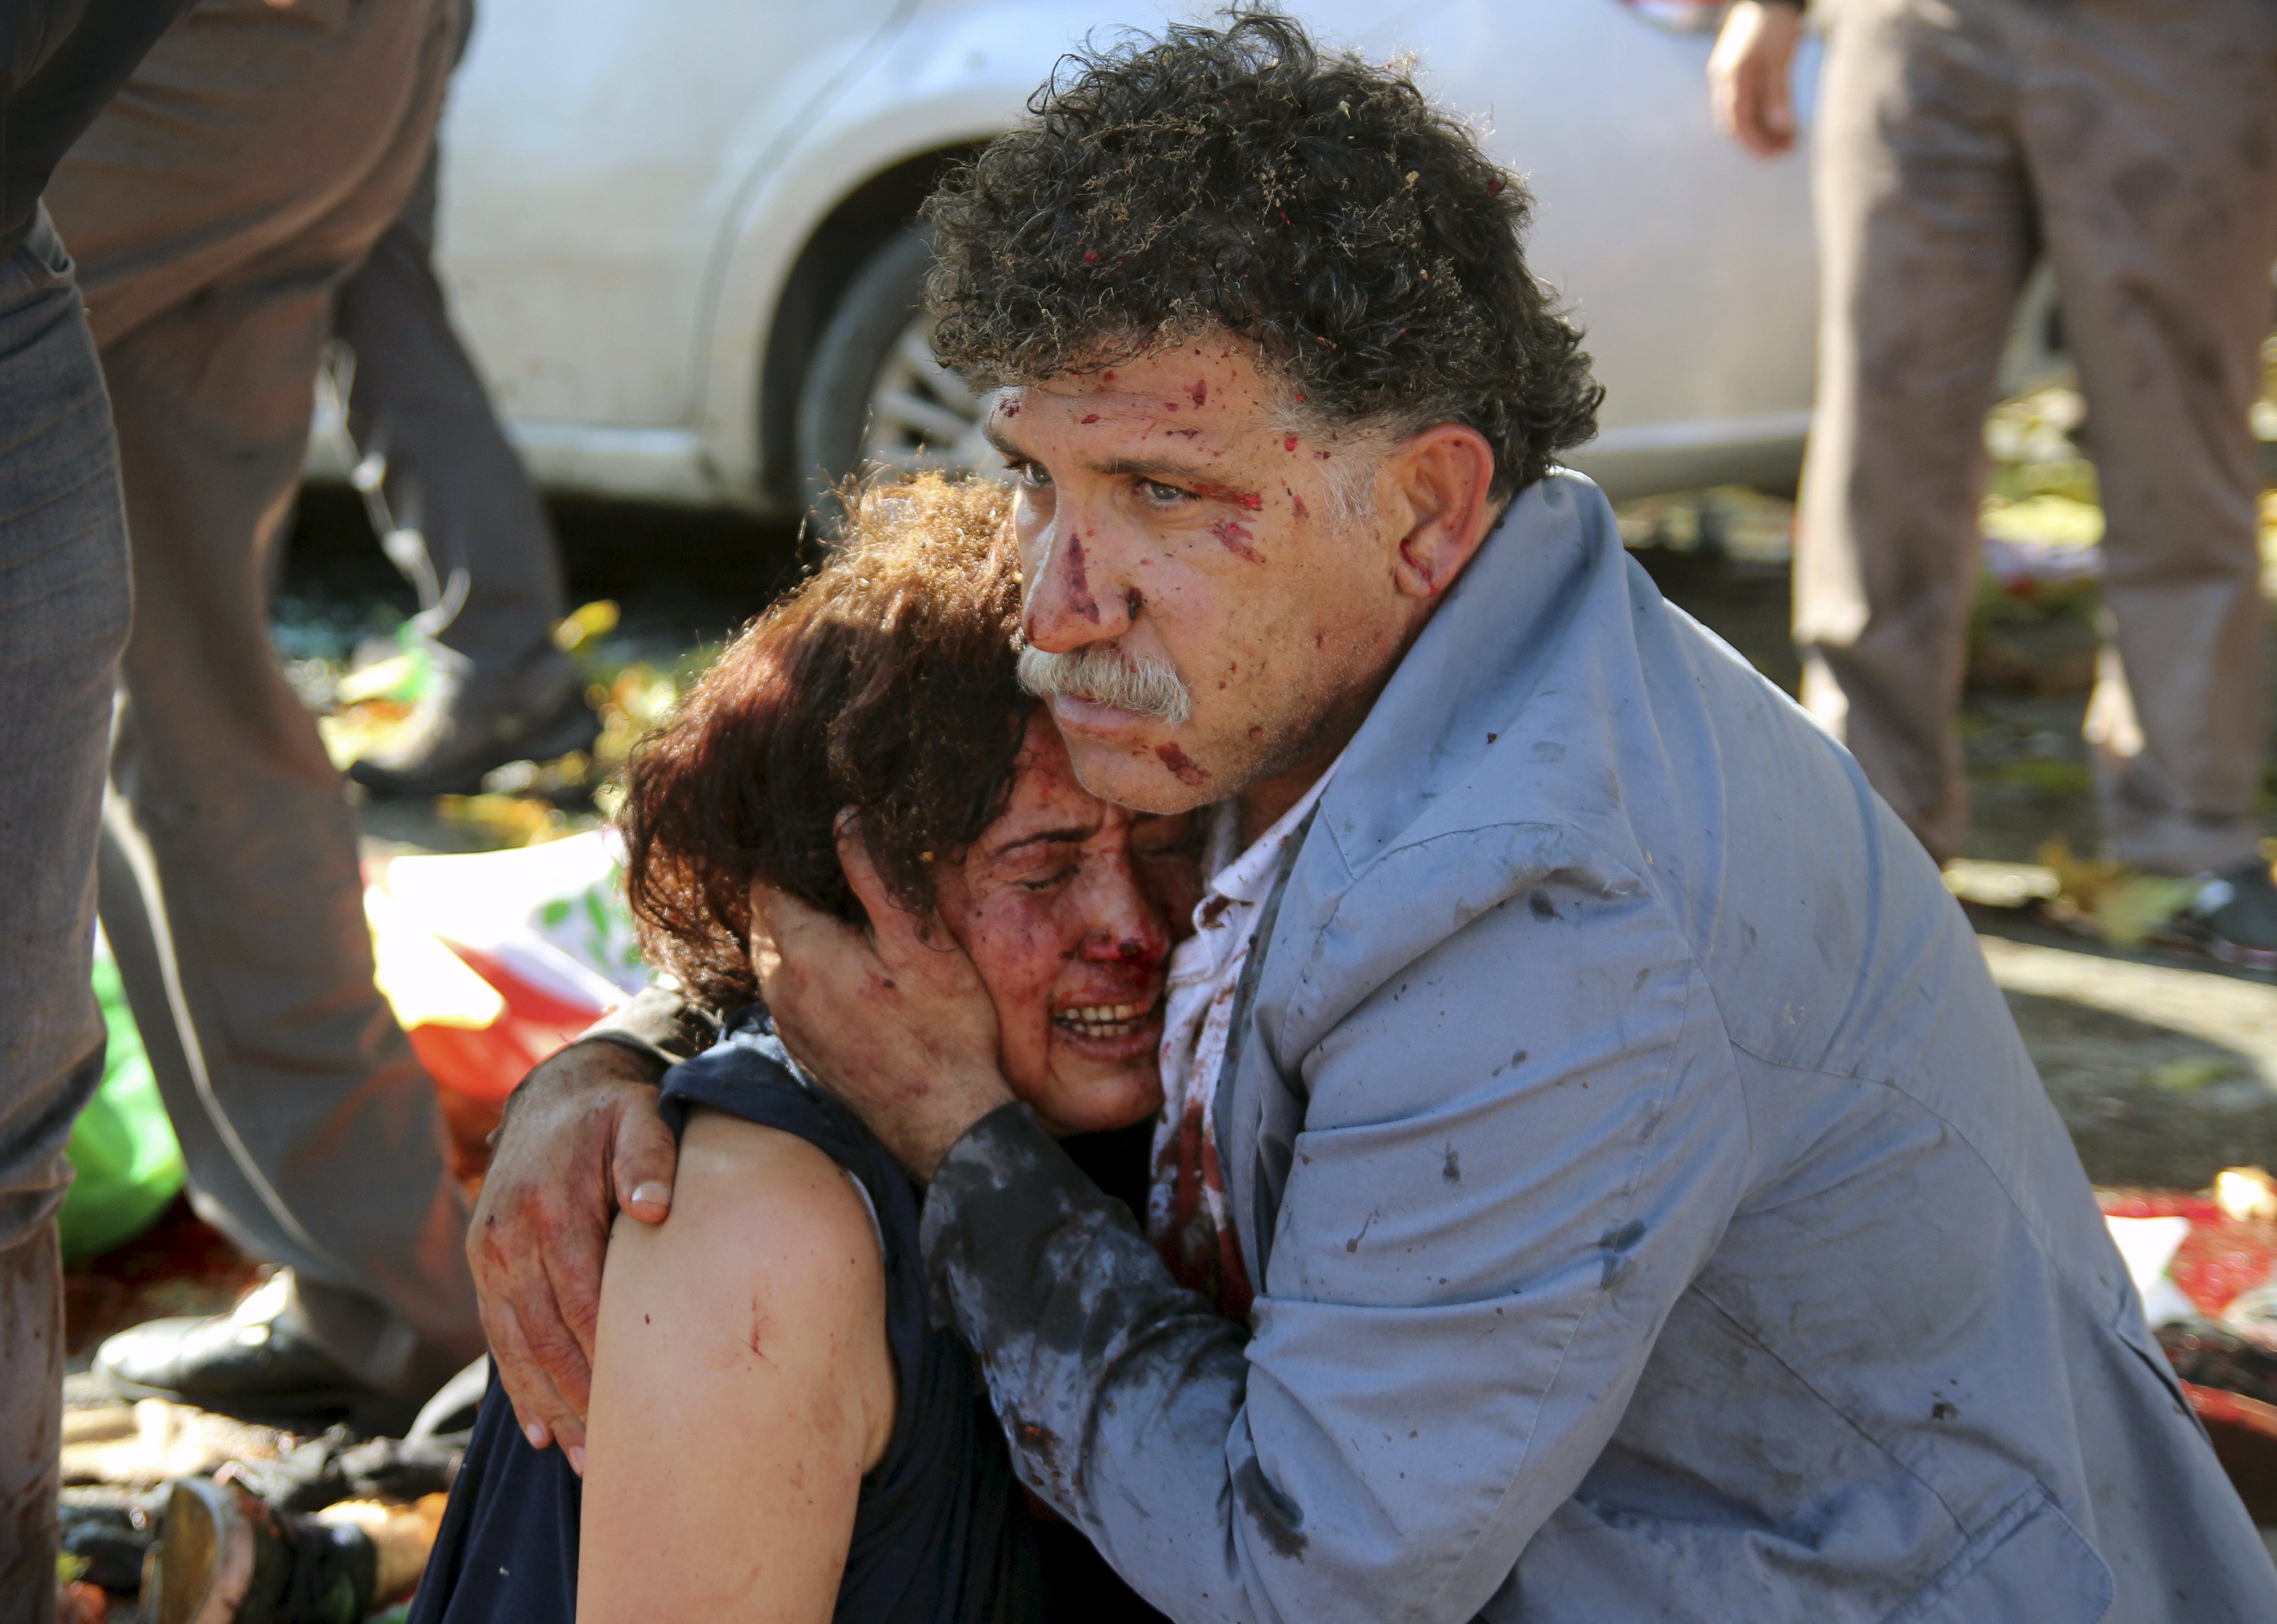 Chính phủ Thổ Nhĩ Kỳ gọi vụ đánh bom tự sát này là hành động khủng bố - Ảnh: Reuters